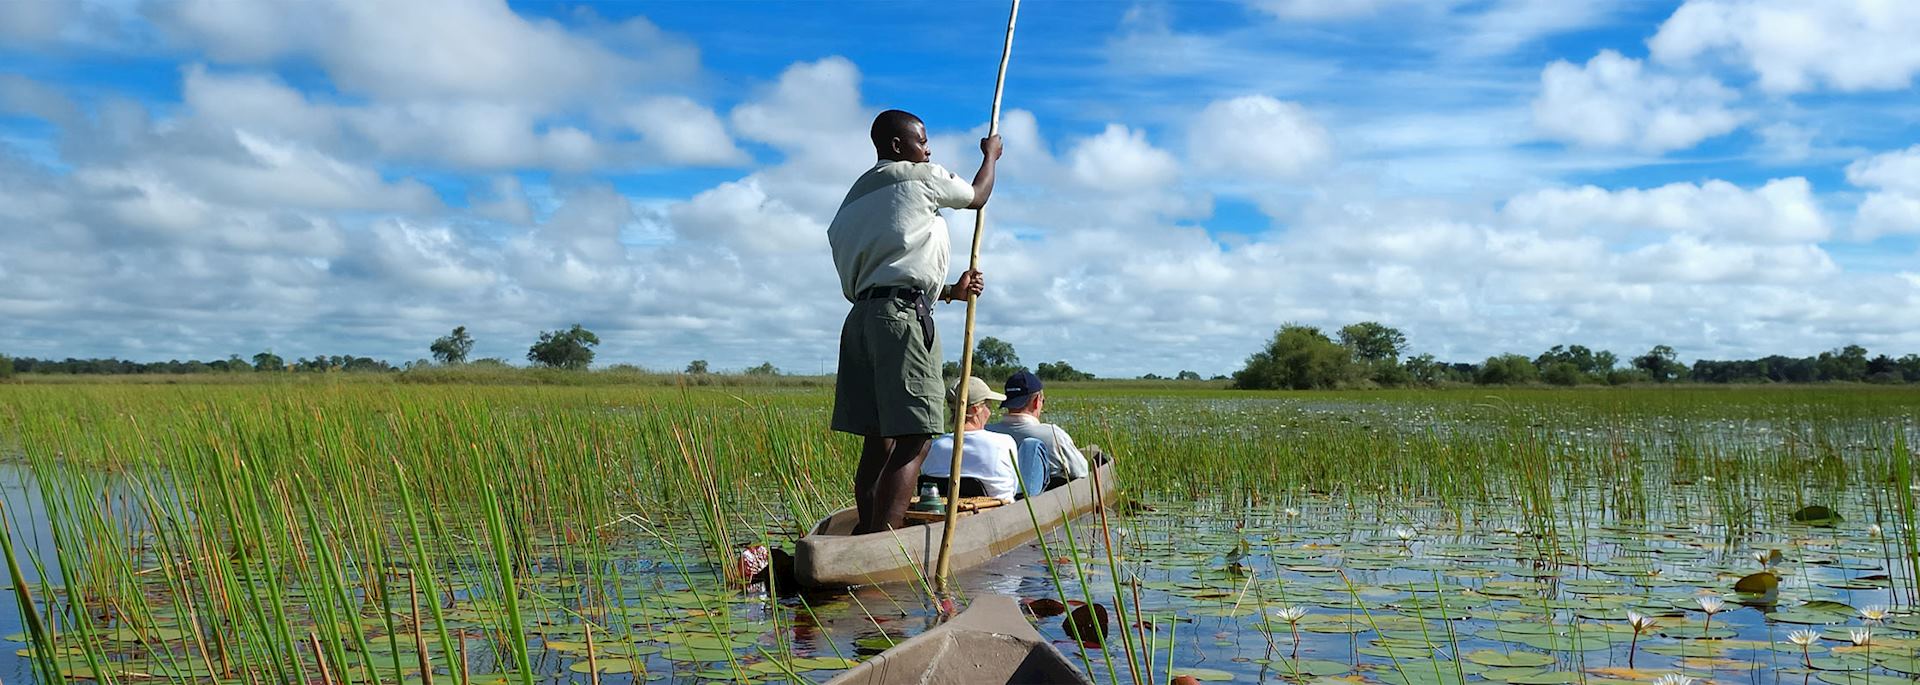 Mokoro trip in Botswana